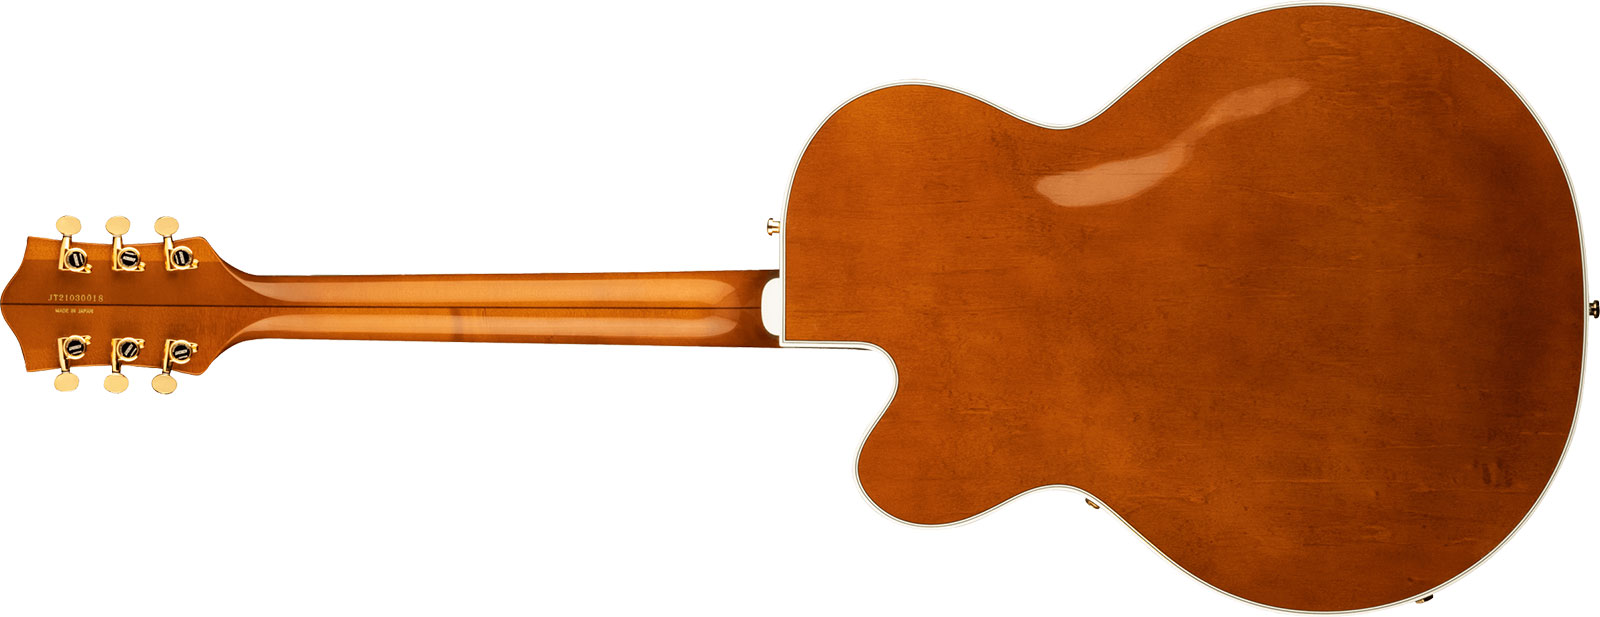 Gretsch G6120tg-ds Players Edition Nashville Pro Jap Bigsby Eb - Roundup Orange - Semi hollow elektriche gitaar - Variation 1